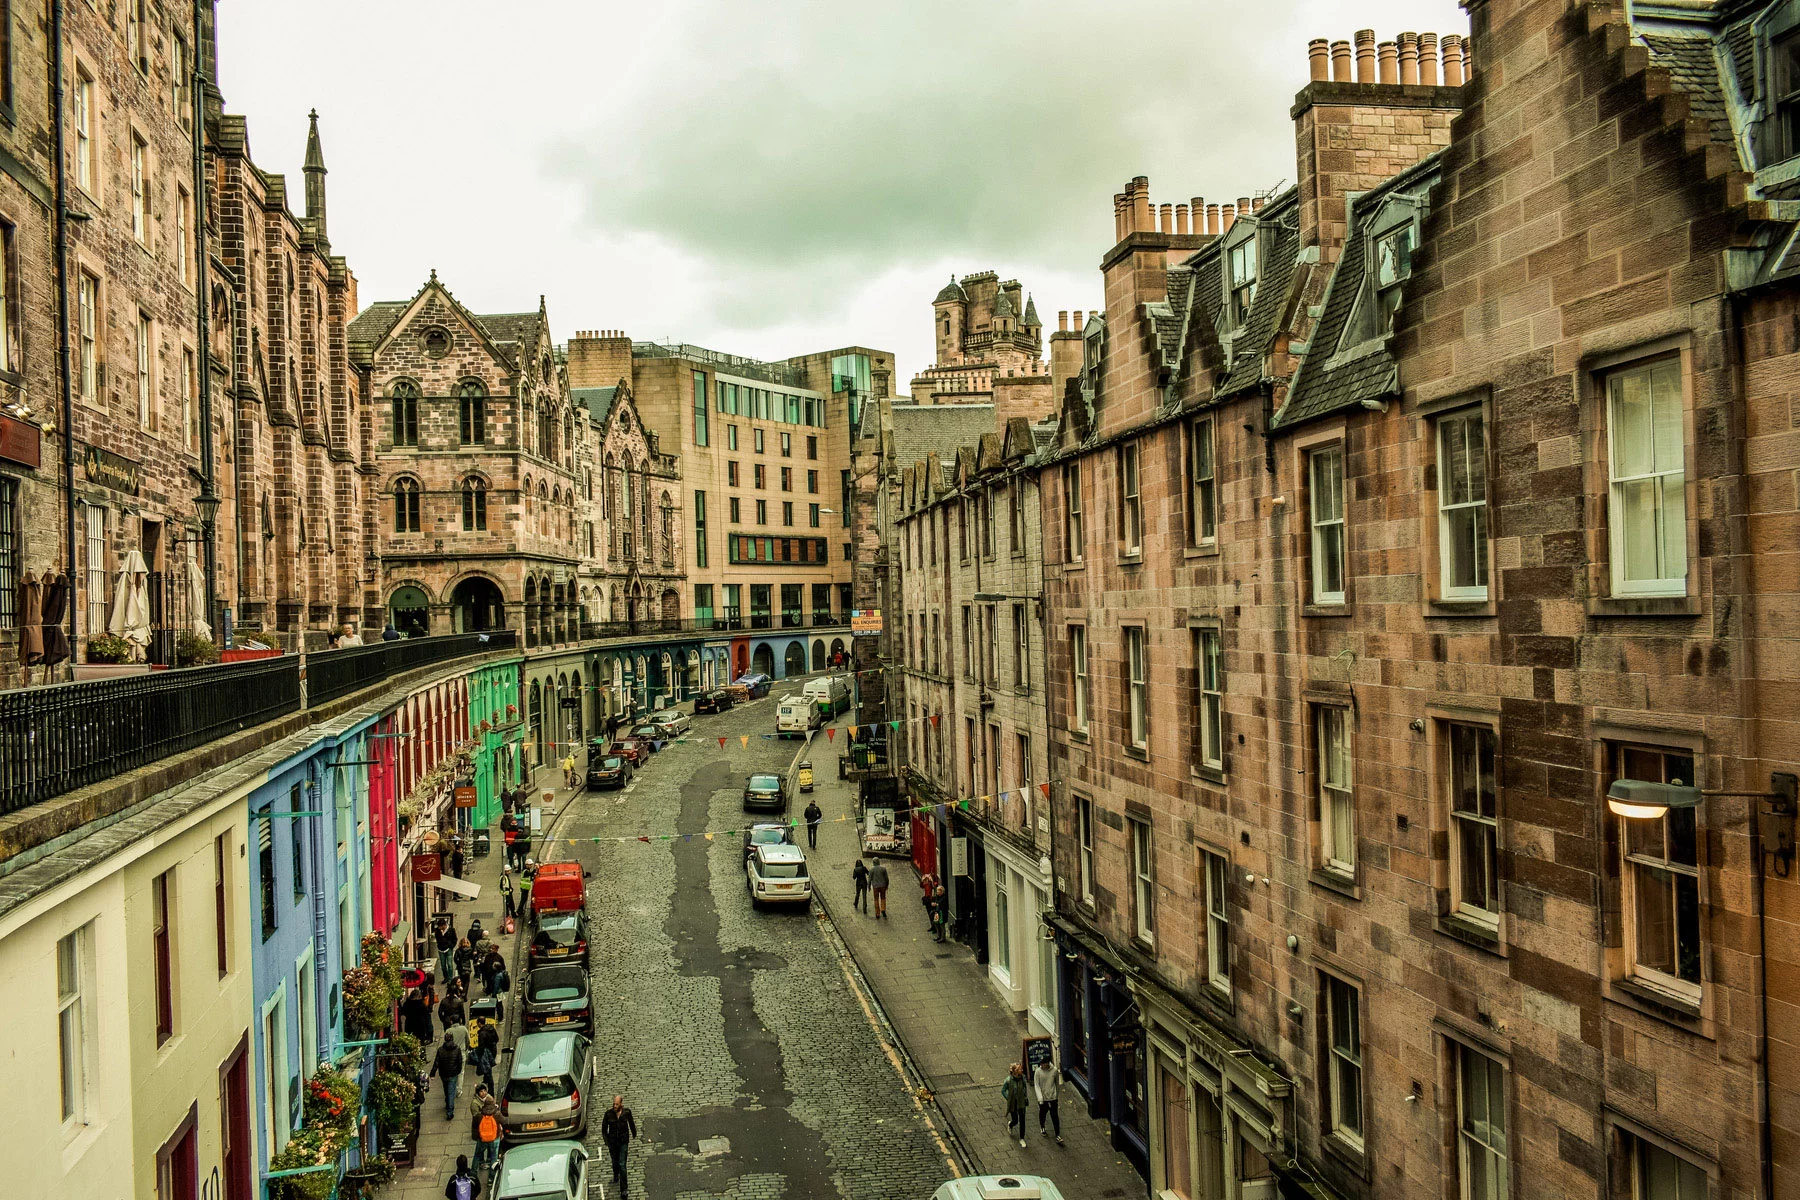 A street in Edinburgh, Scotland